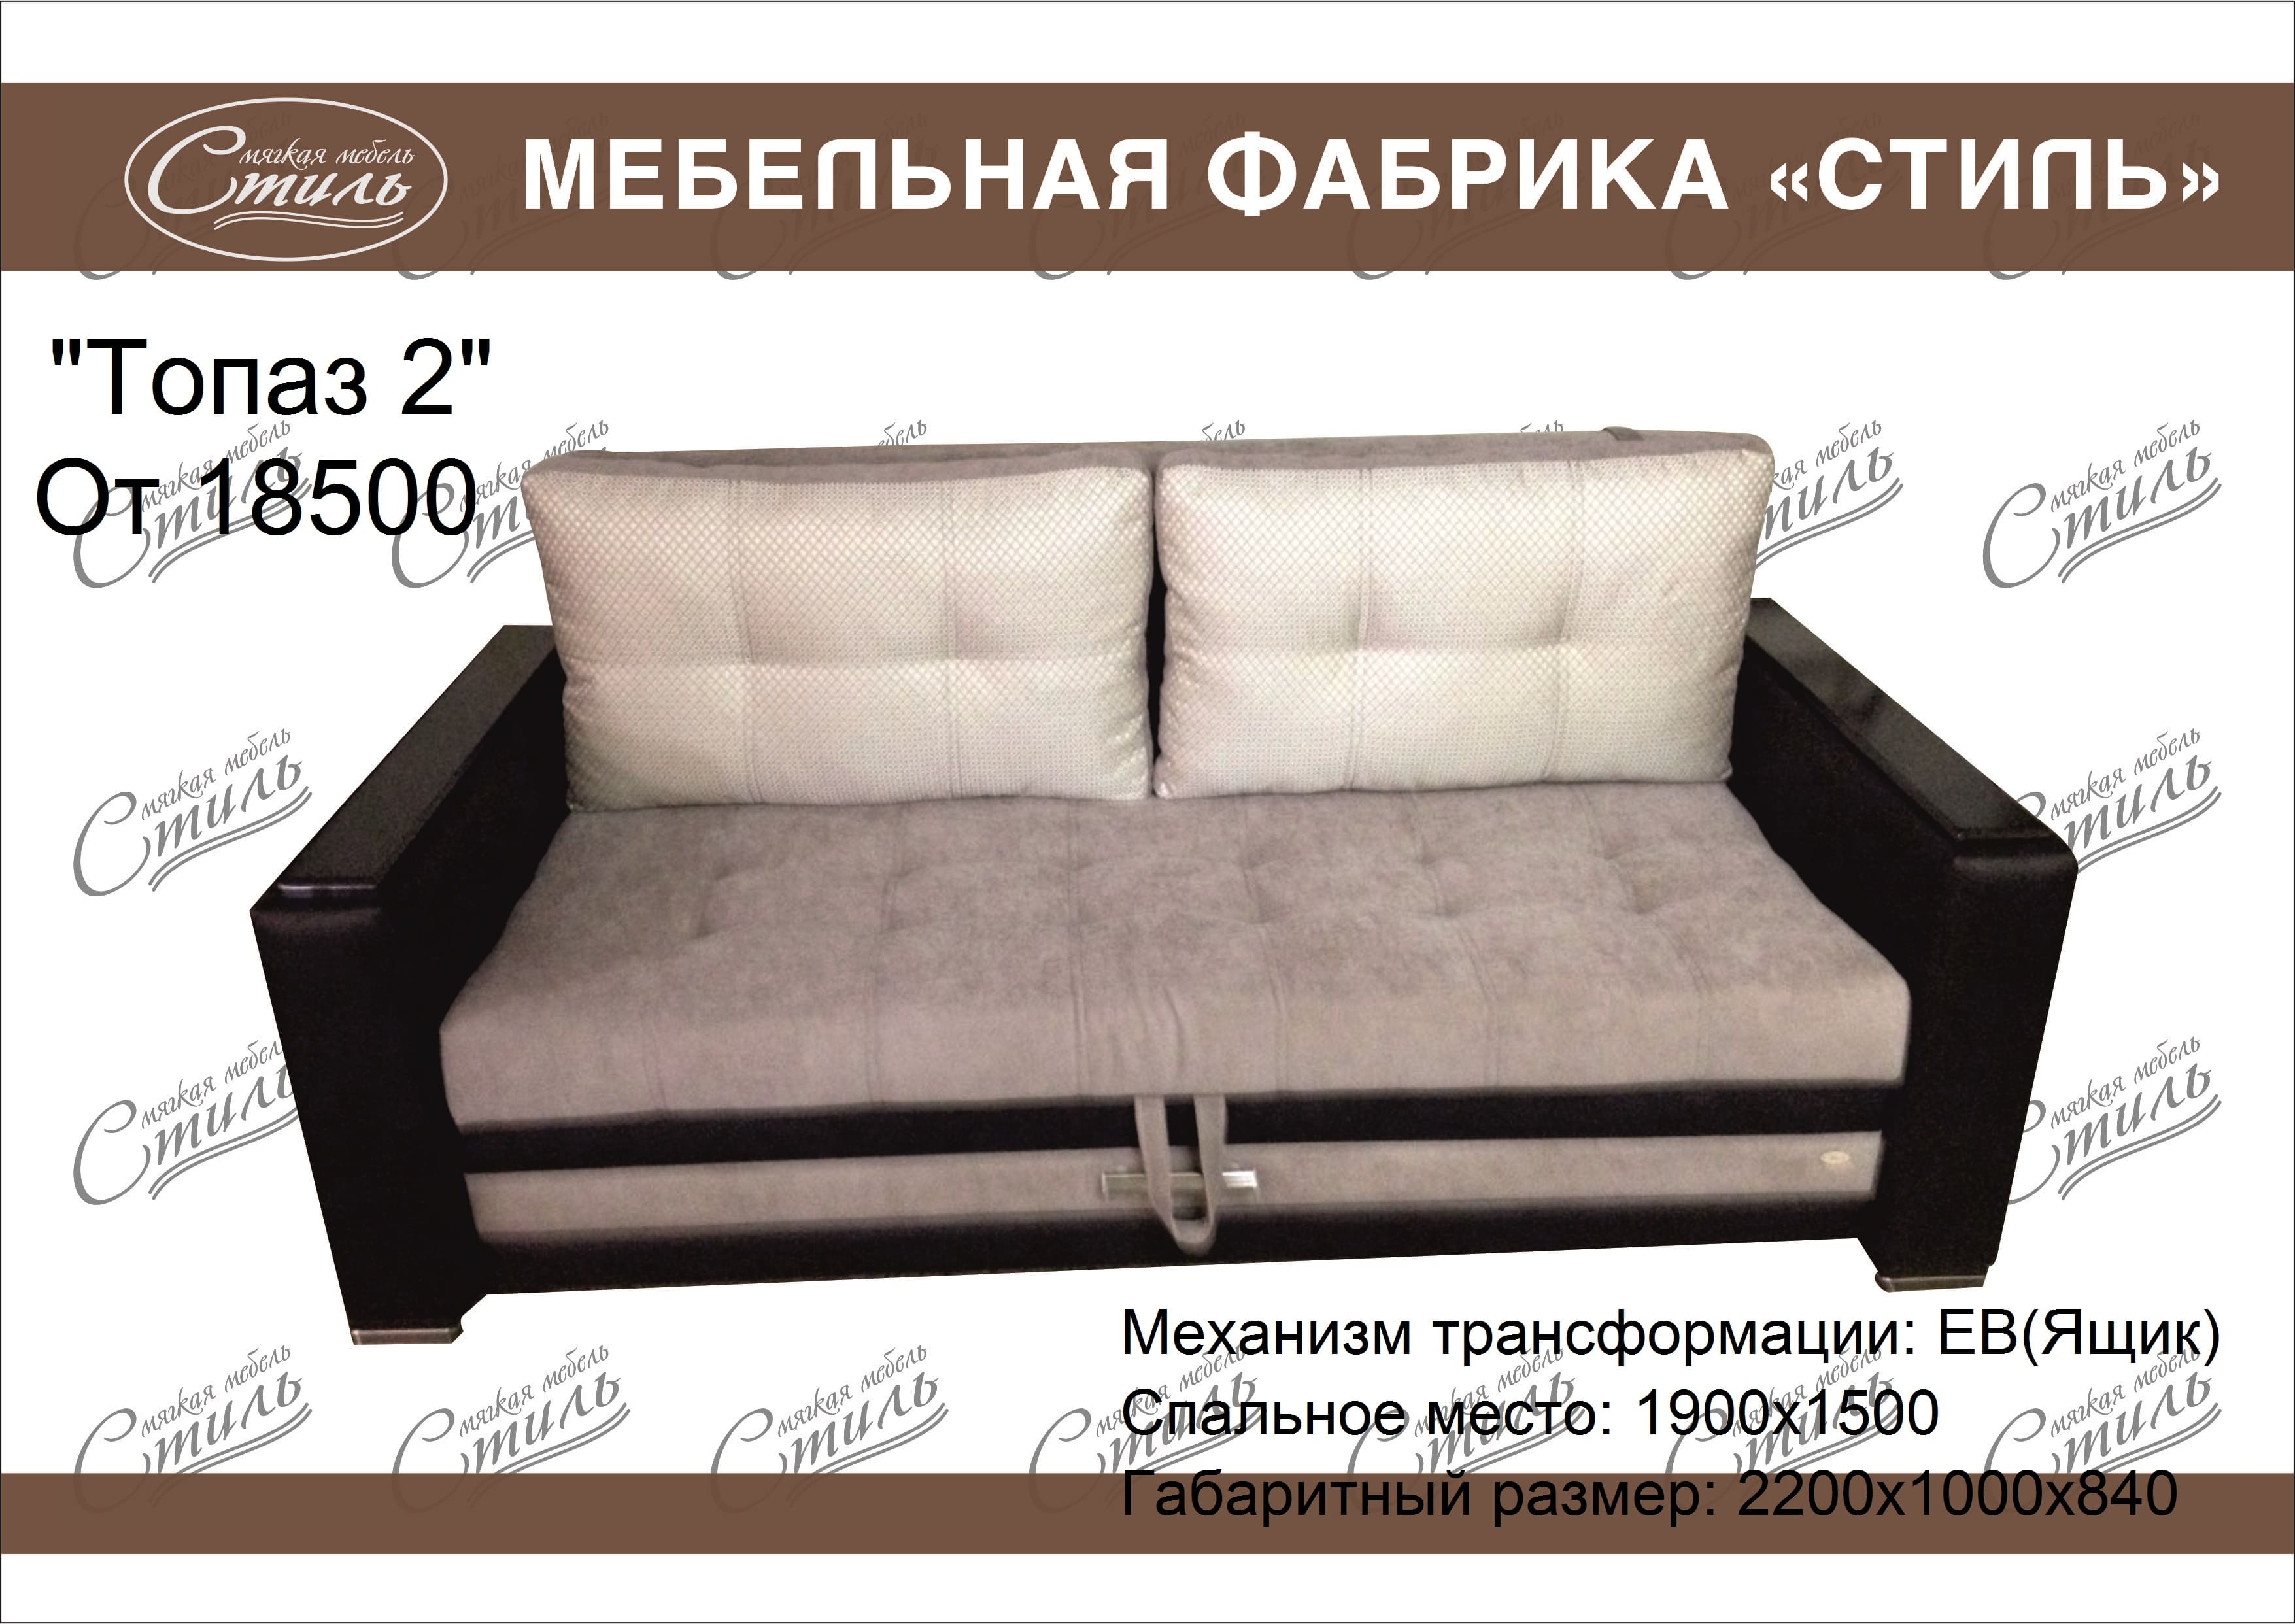 Ульяновская мебельная фабрика успех